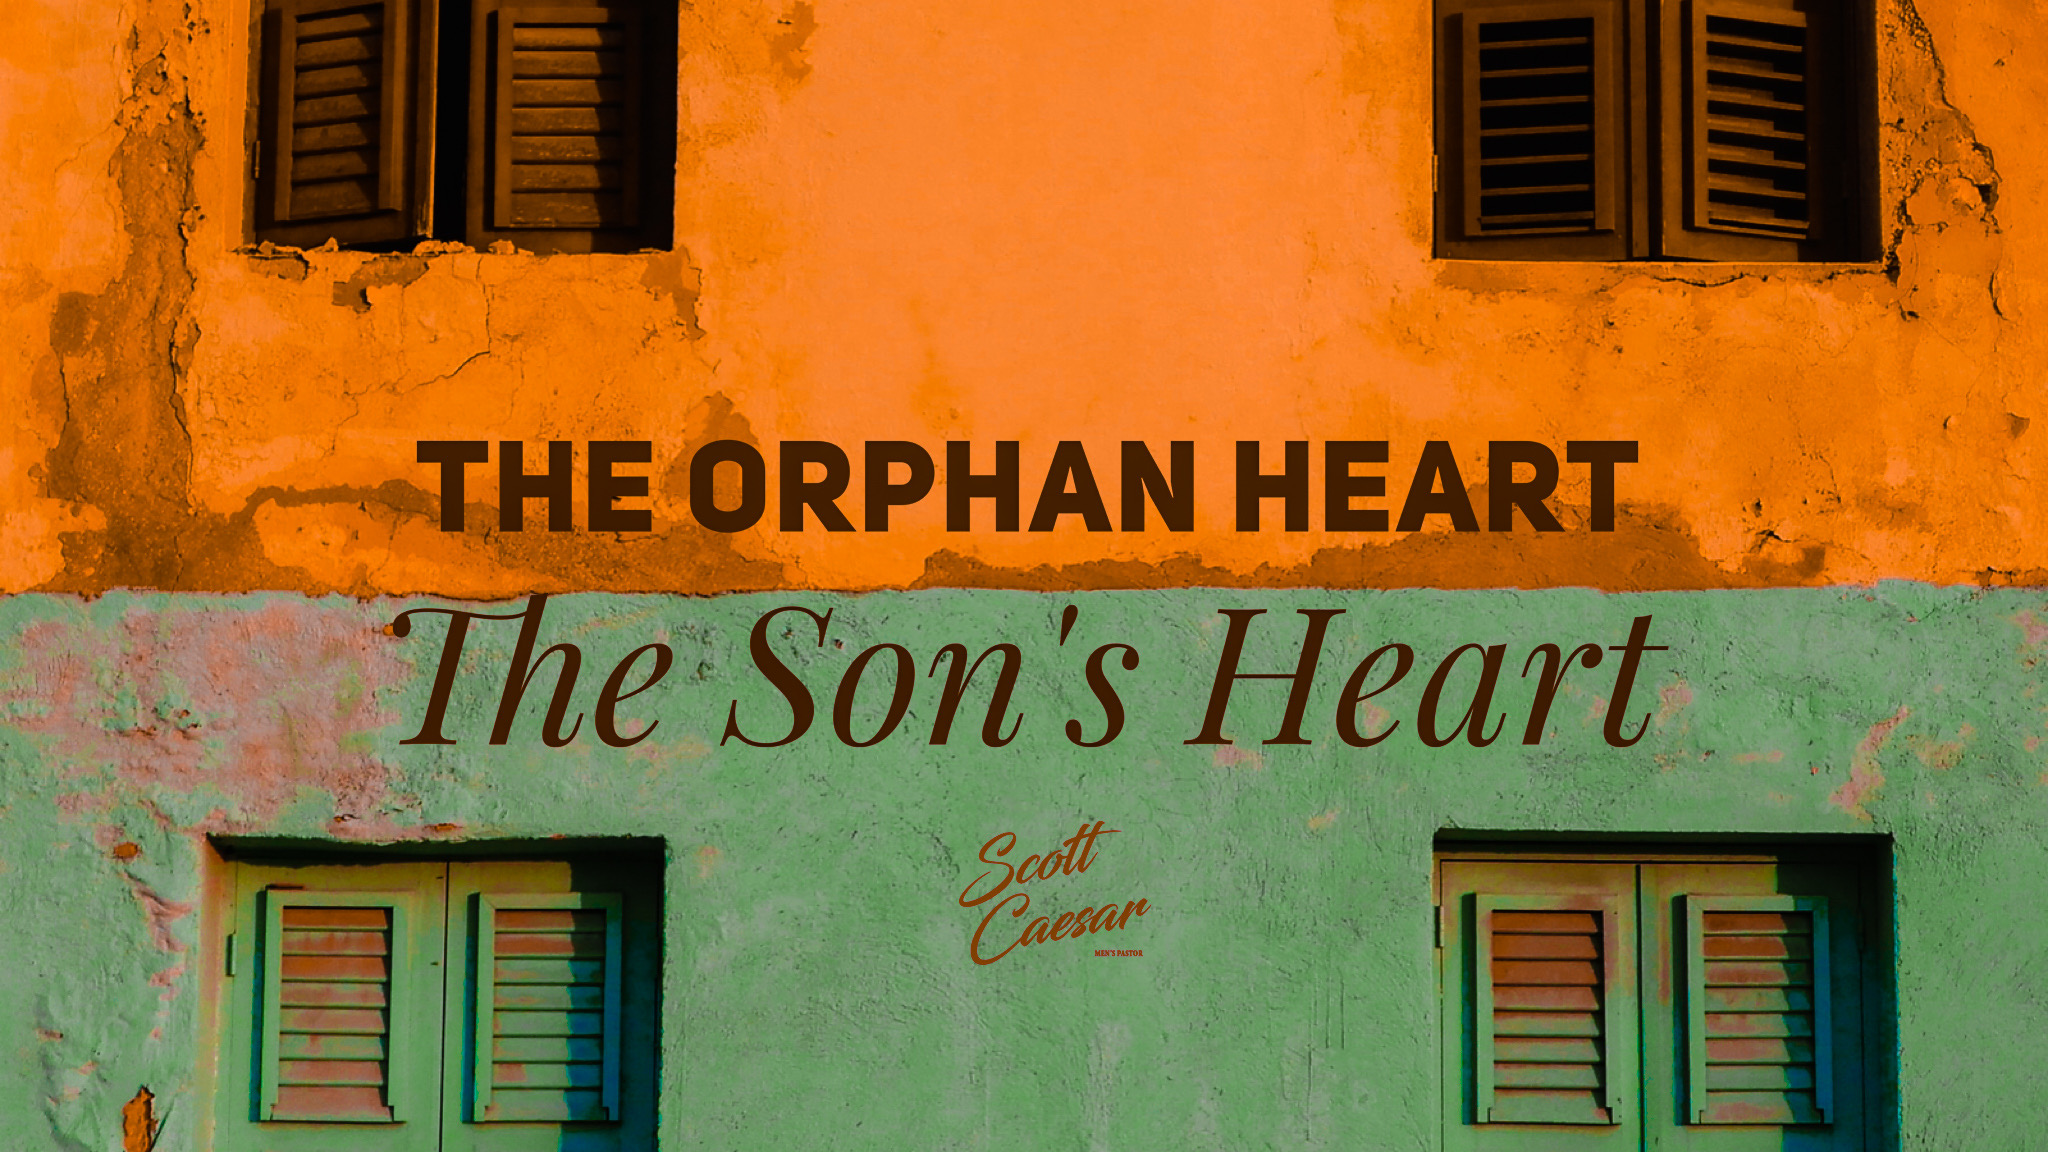 The Orphan Heart.. The Son’s Heart